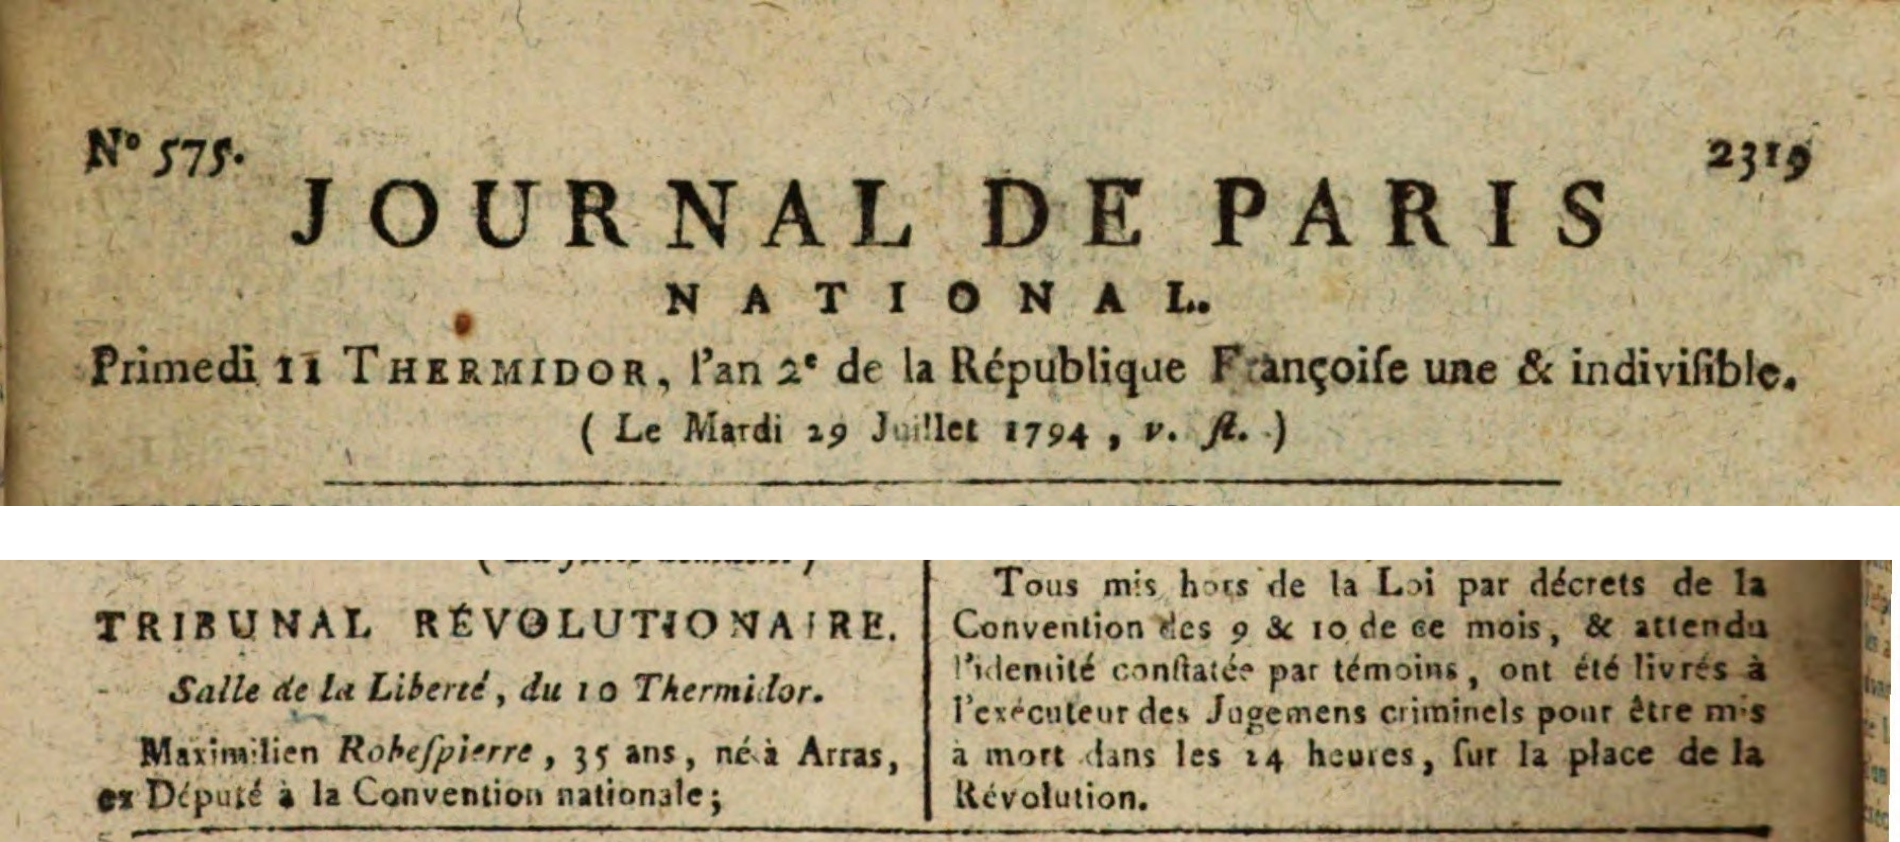 Robespierre's execution, Journal de Paris, 29 July 1794